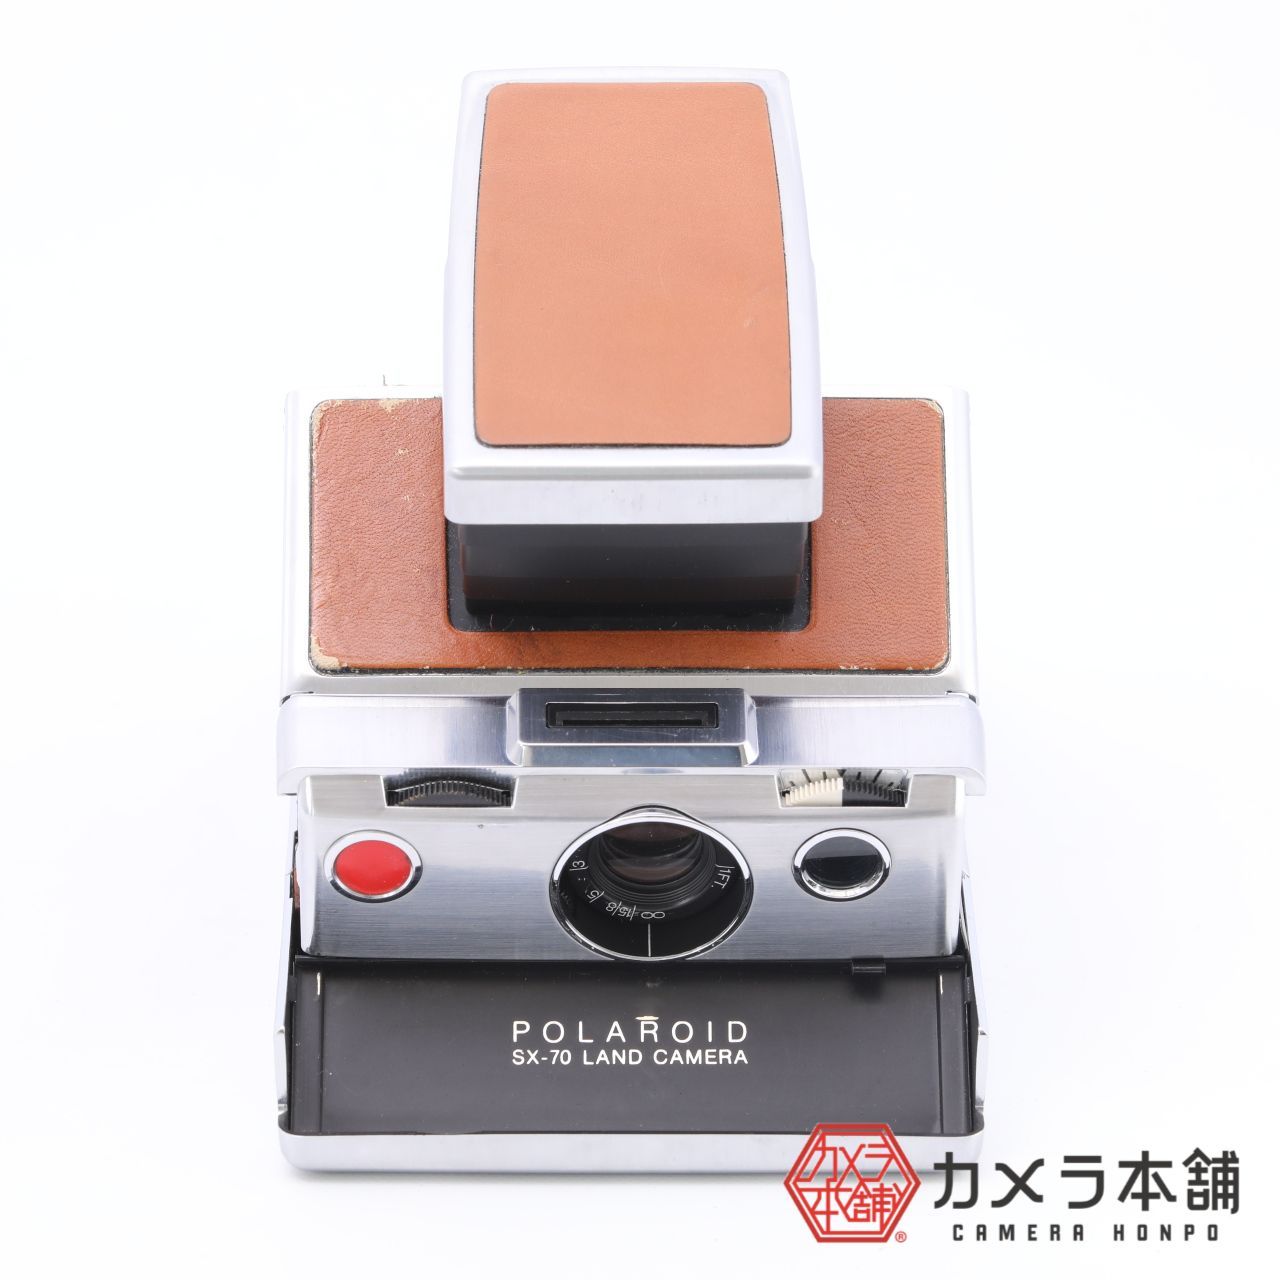 Polaroid ポラロイド SX-70 LAND CAMERA フィルムカメラ - カメラ本舗